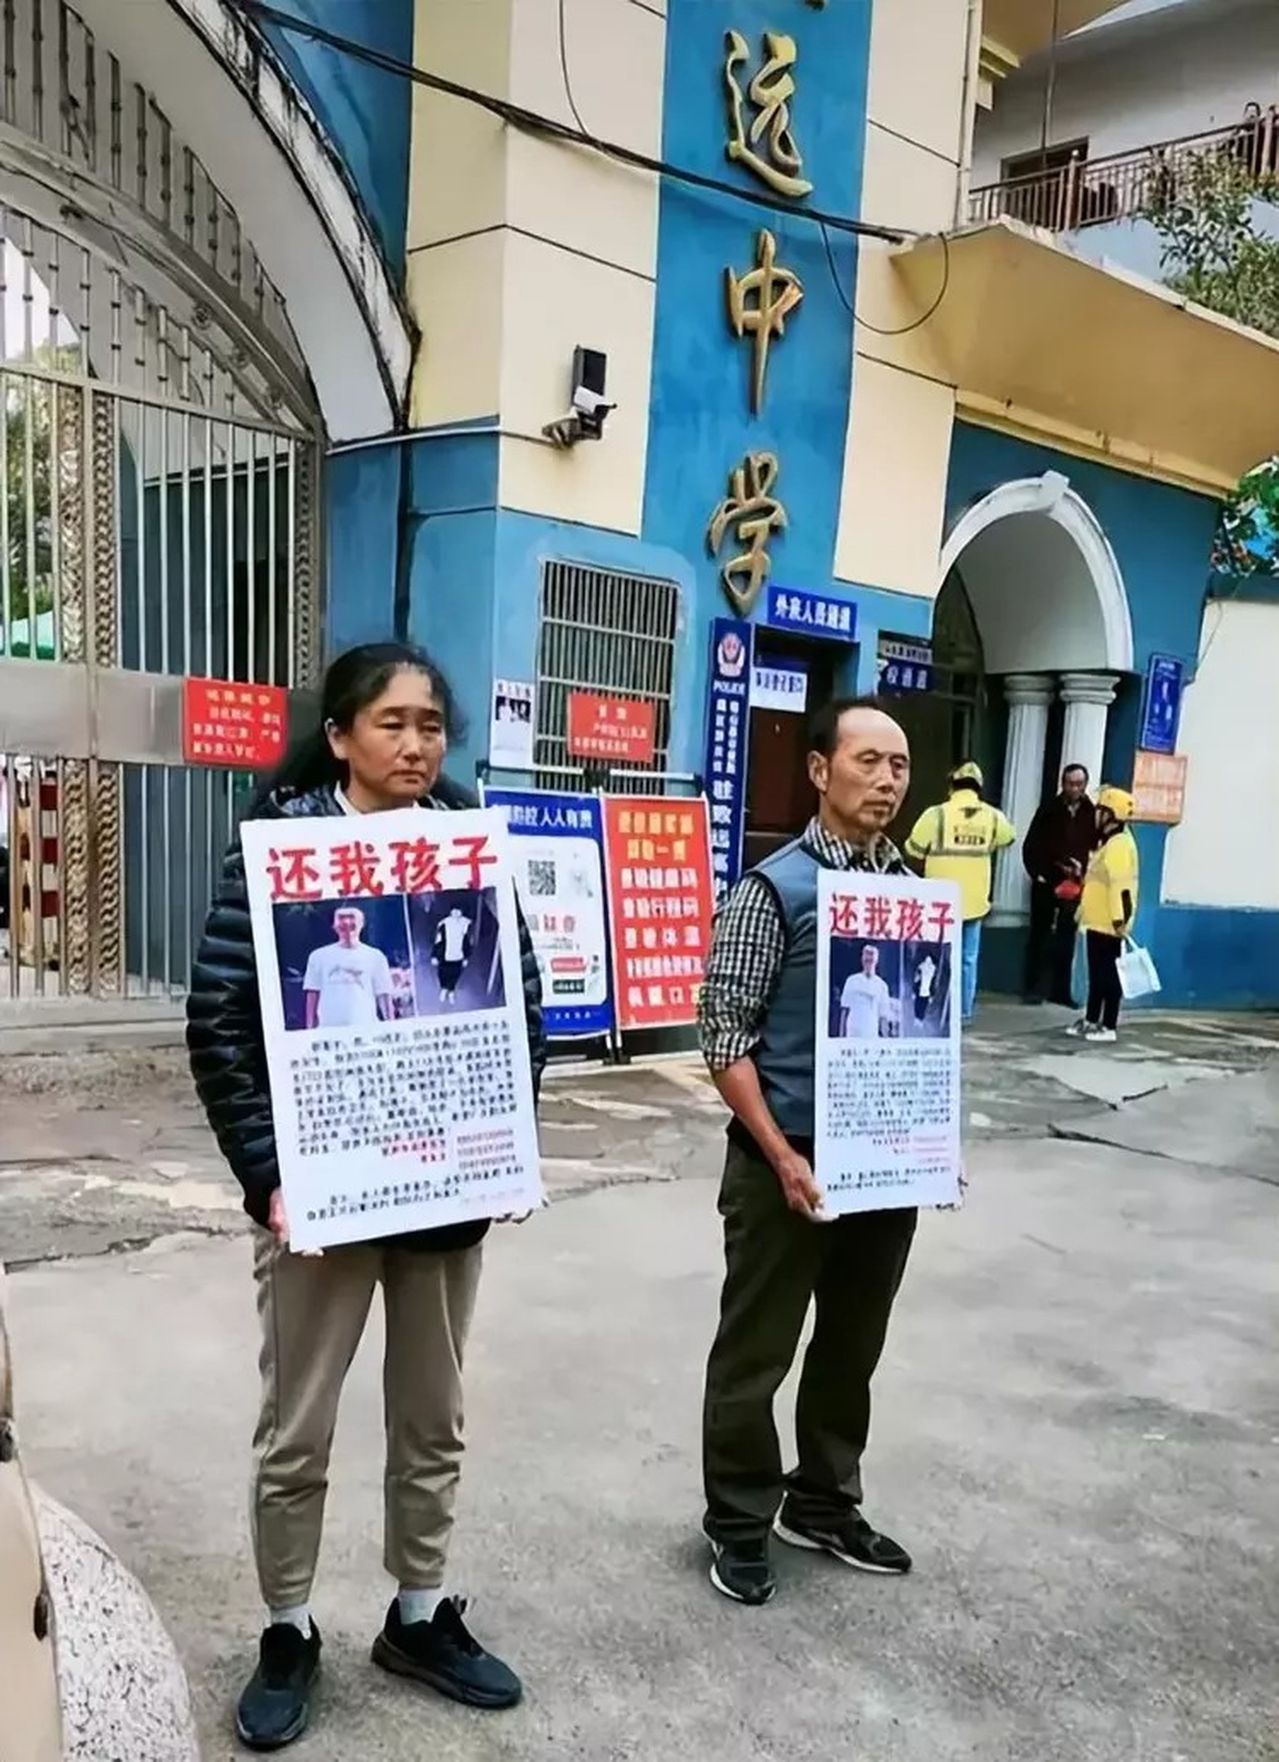 胡鑫宇父母在校门口拿著「还我孩子」的启事。 (取材自自媒体「晴蕊教育」)